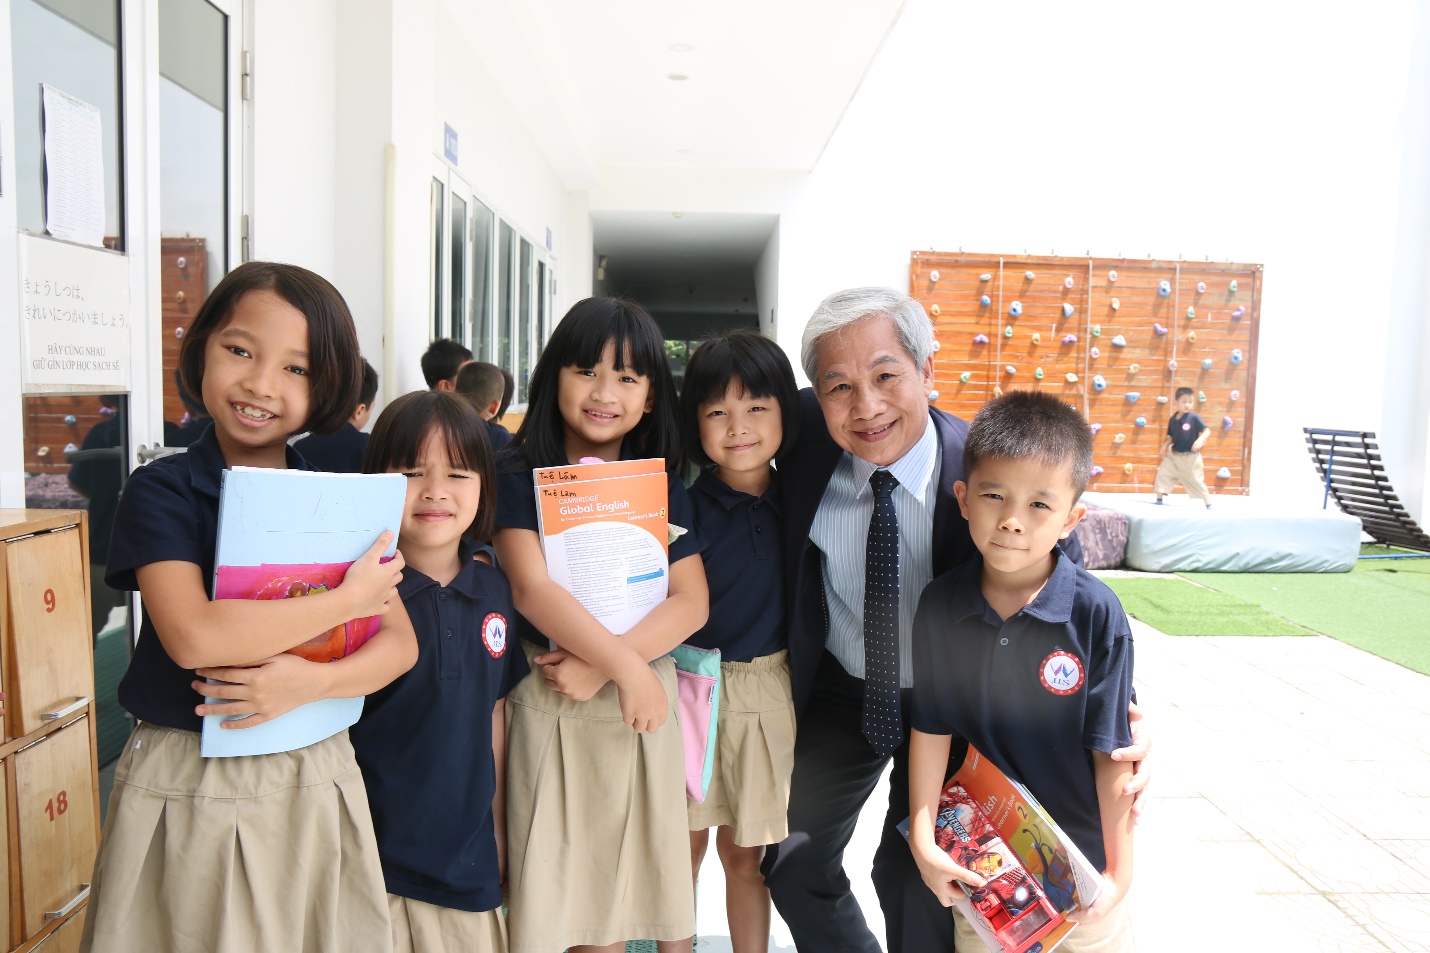 Ngôi trường Quốc tế đặc biệt ở Hà Nội: Không lớp trưởng, không “sao đỏ” nhưng học sinh luôn lễ phép và hạnh phúc - Ảnh 5.